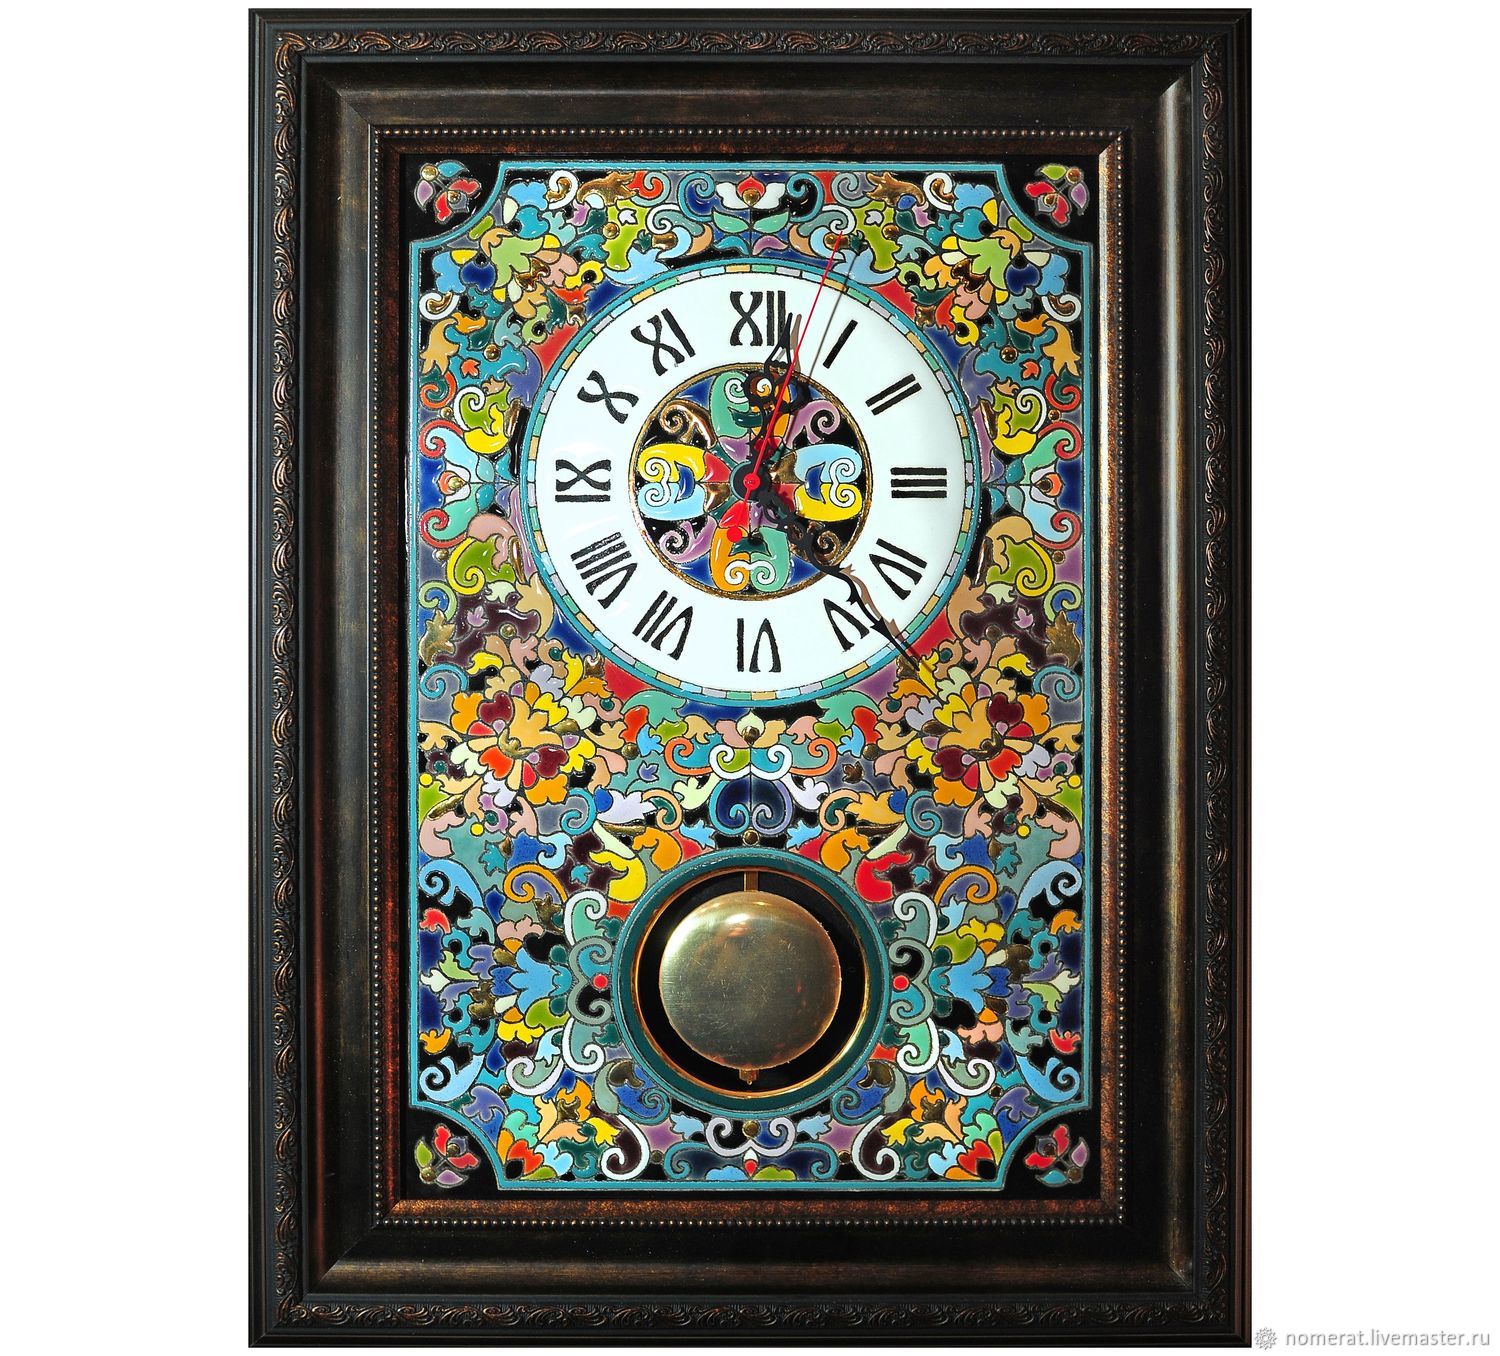 Купить напольные настенные. Cearco испанская керамика. Cearco испанская керамика часы. Испанские керамические часы Cearco ИД 5216175. Испанские керамические часы Cearco ИД 5216174.